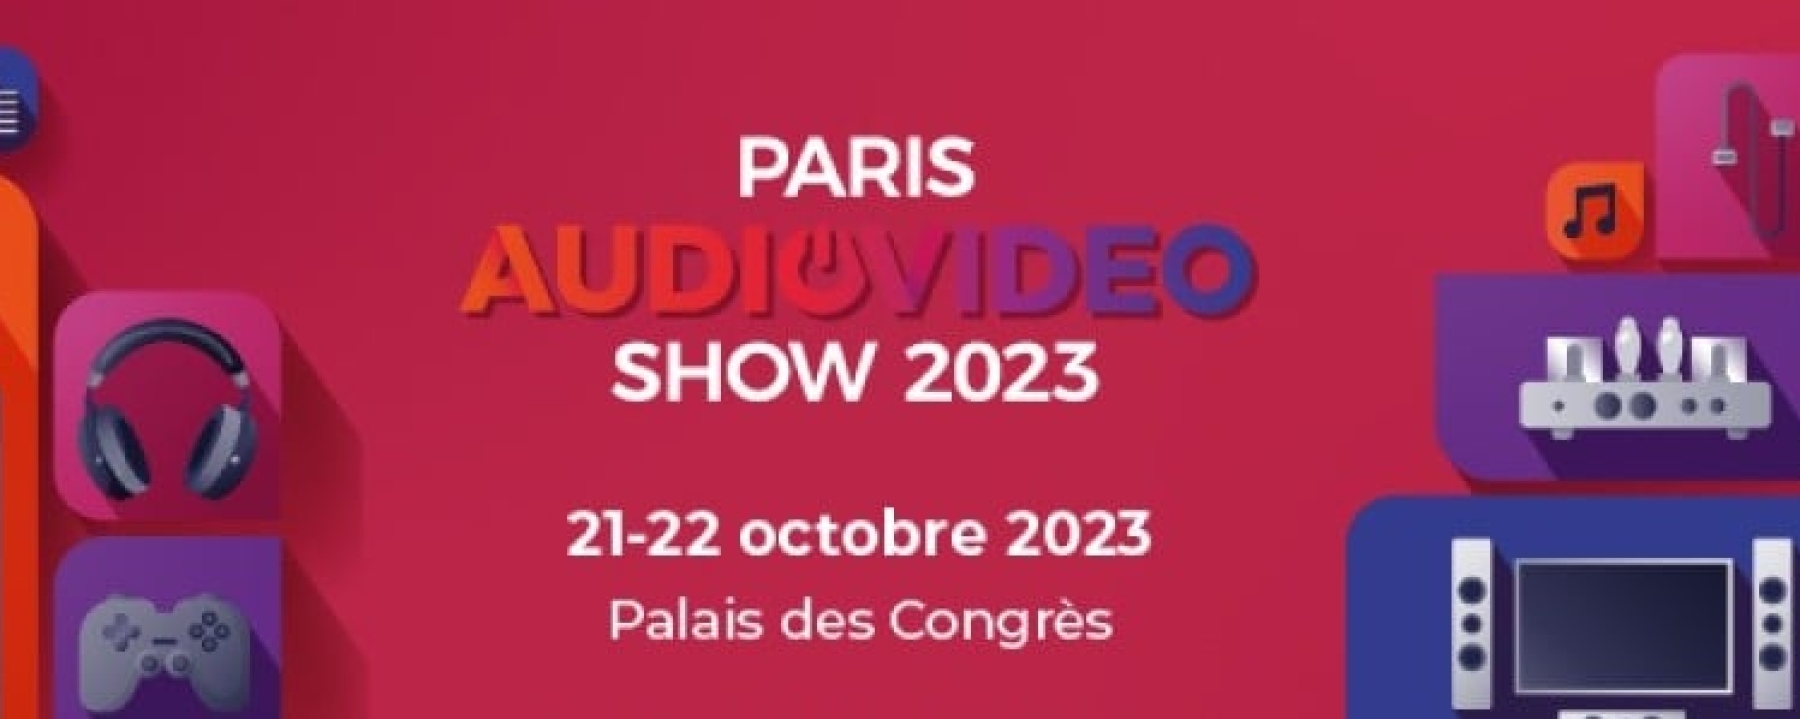 Paris Audio Video Show 2023